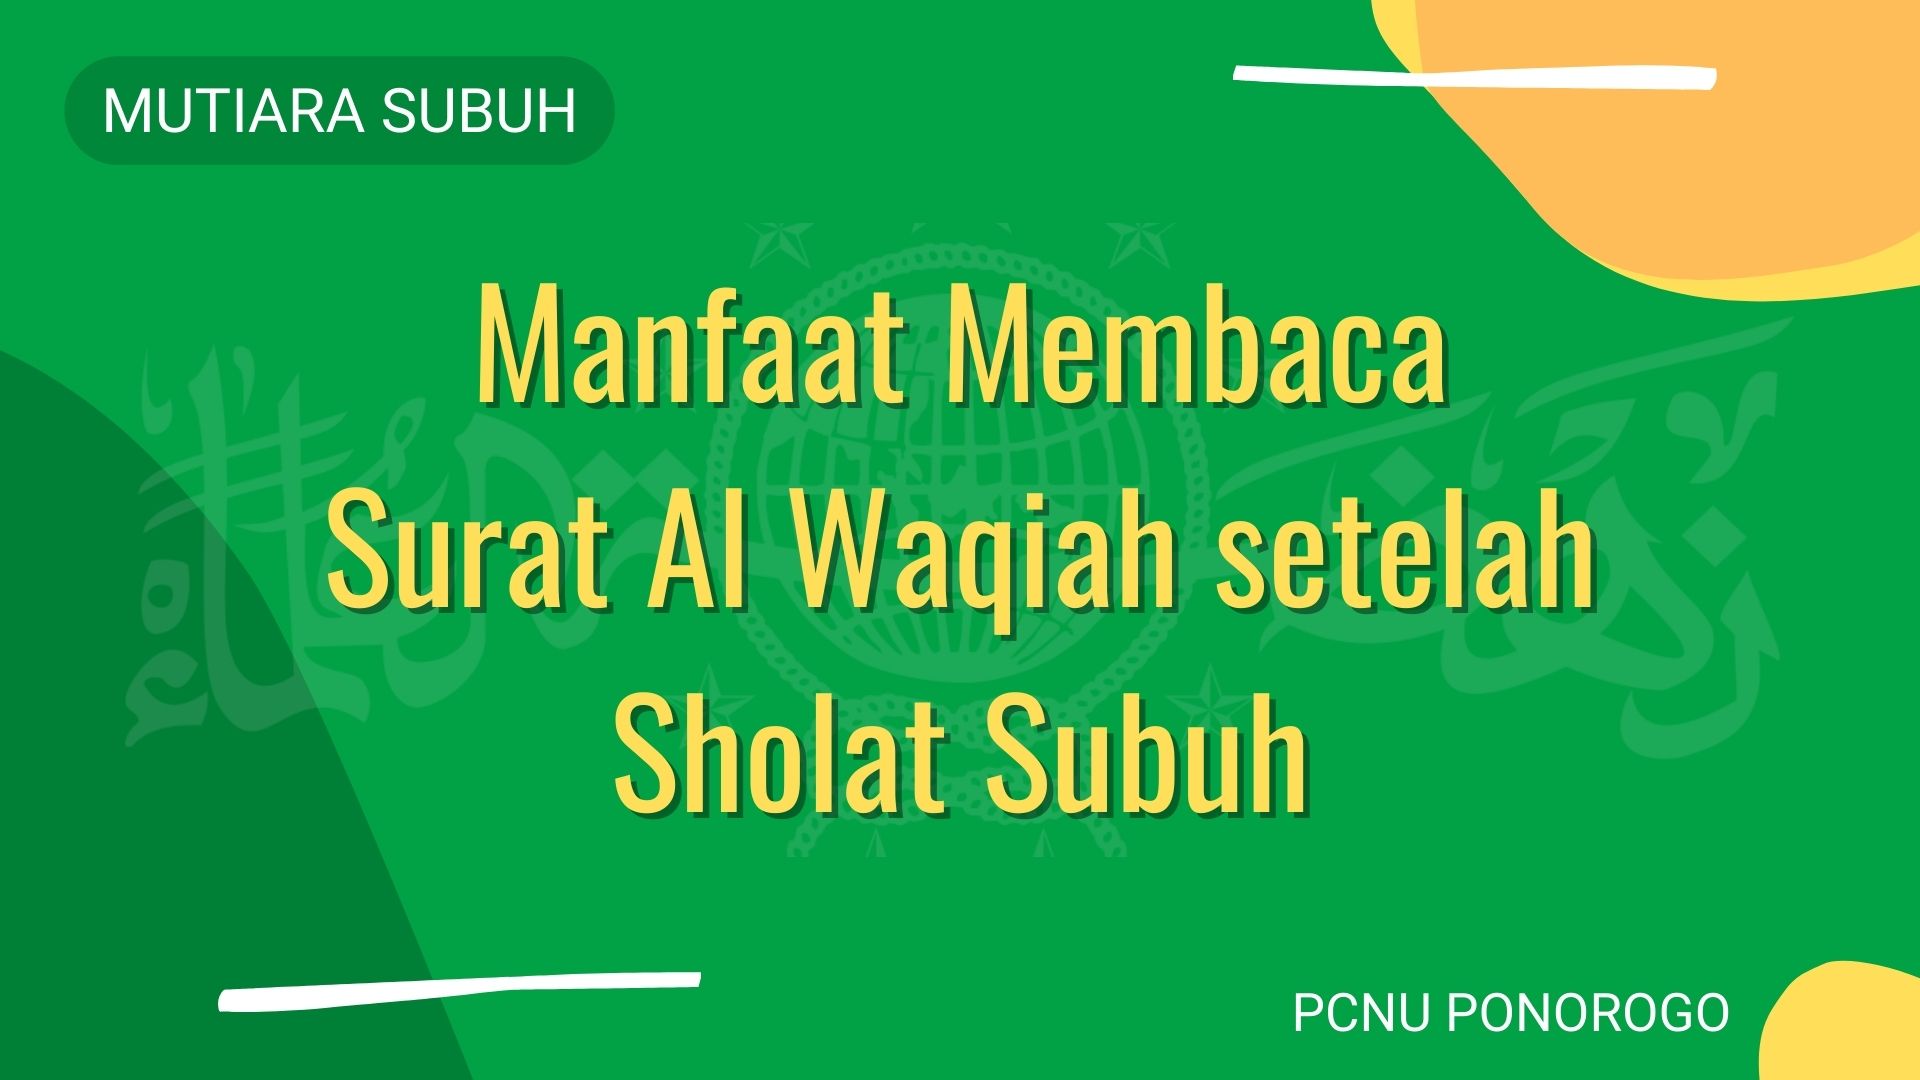 Manfaat Membaca Surat Al Waqiah setelah Sholat Subuh